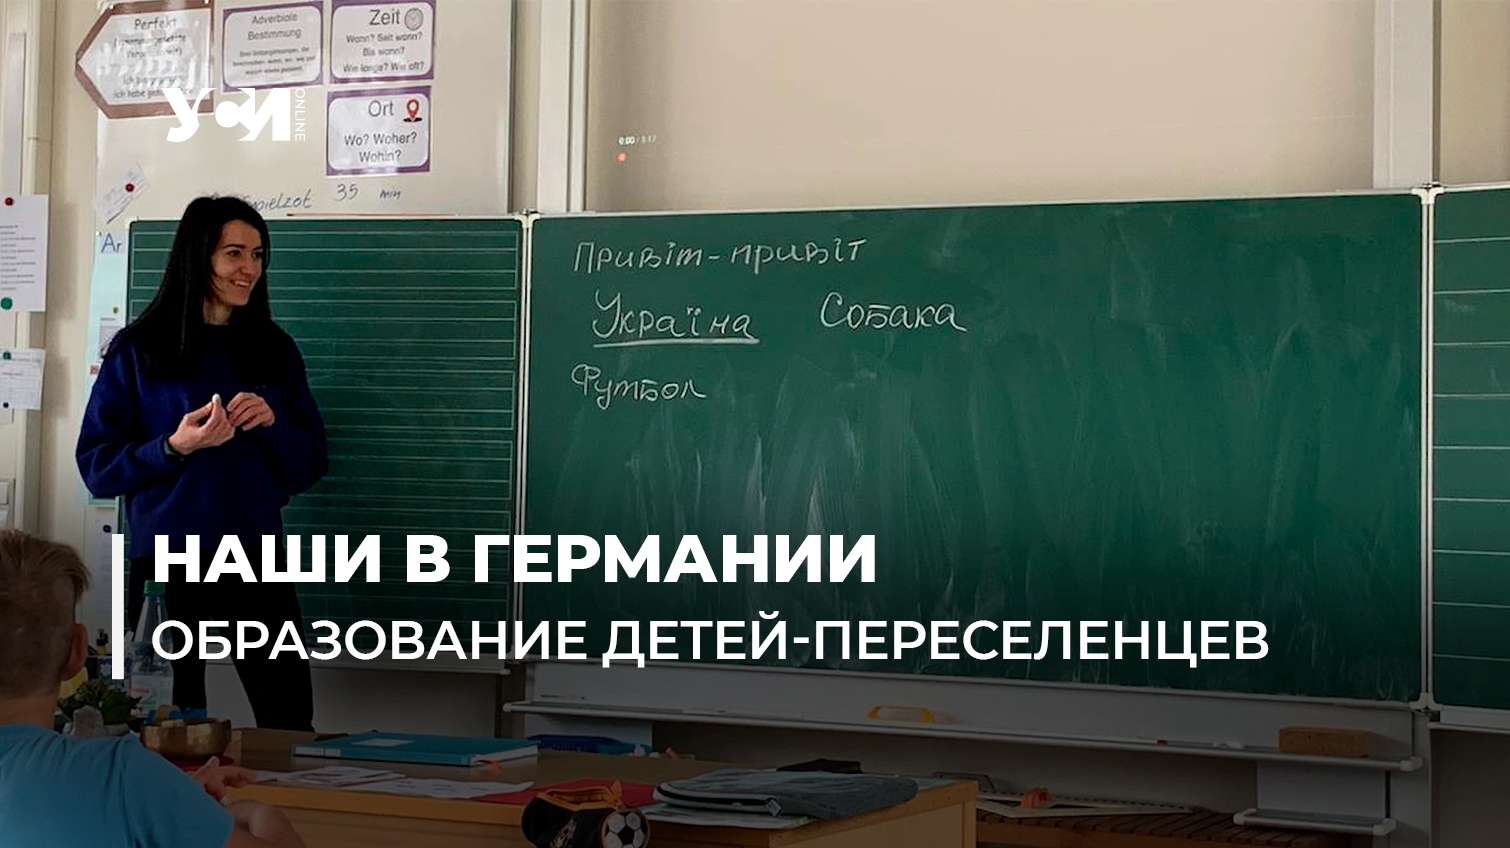 Германия оплачивает образование украинских детей: в немецких школах работают переселенцы из Николаева (фото) «фото»